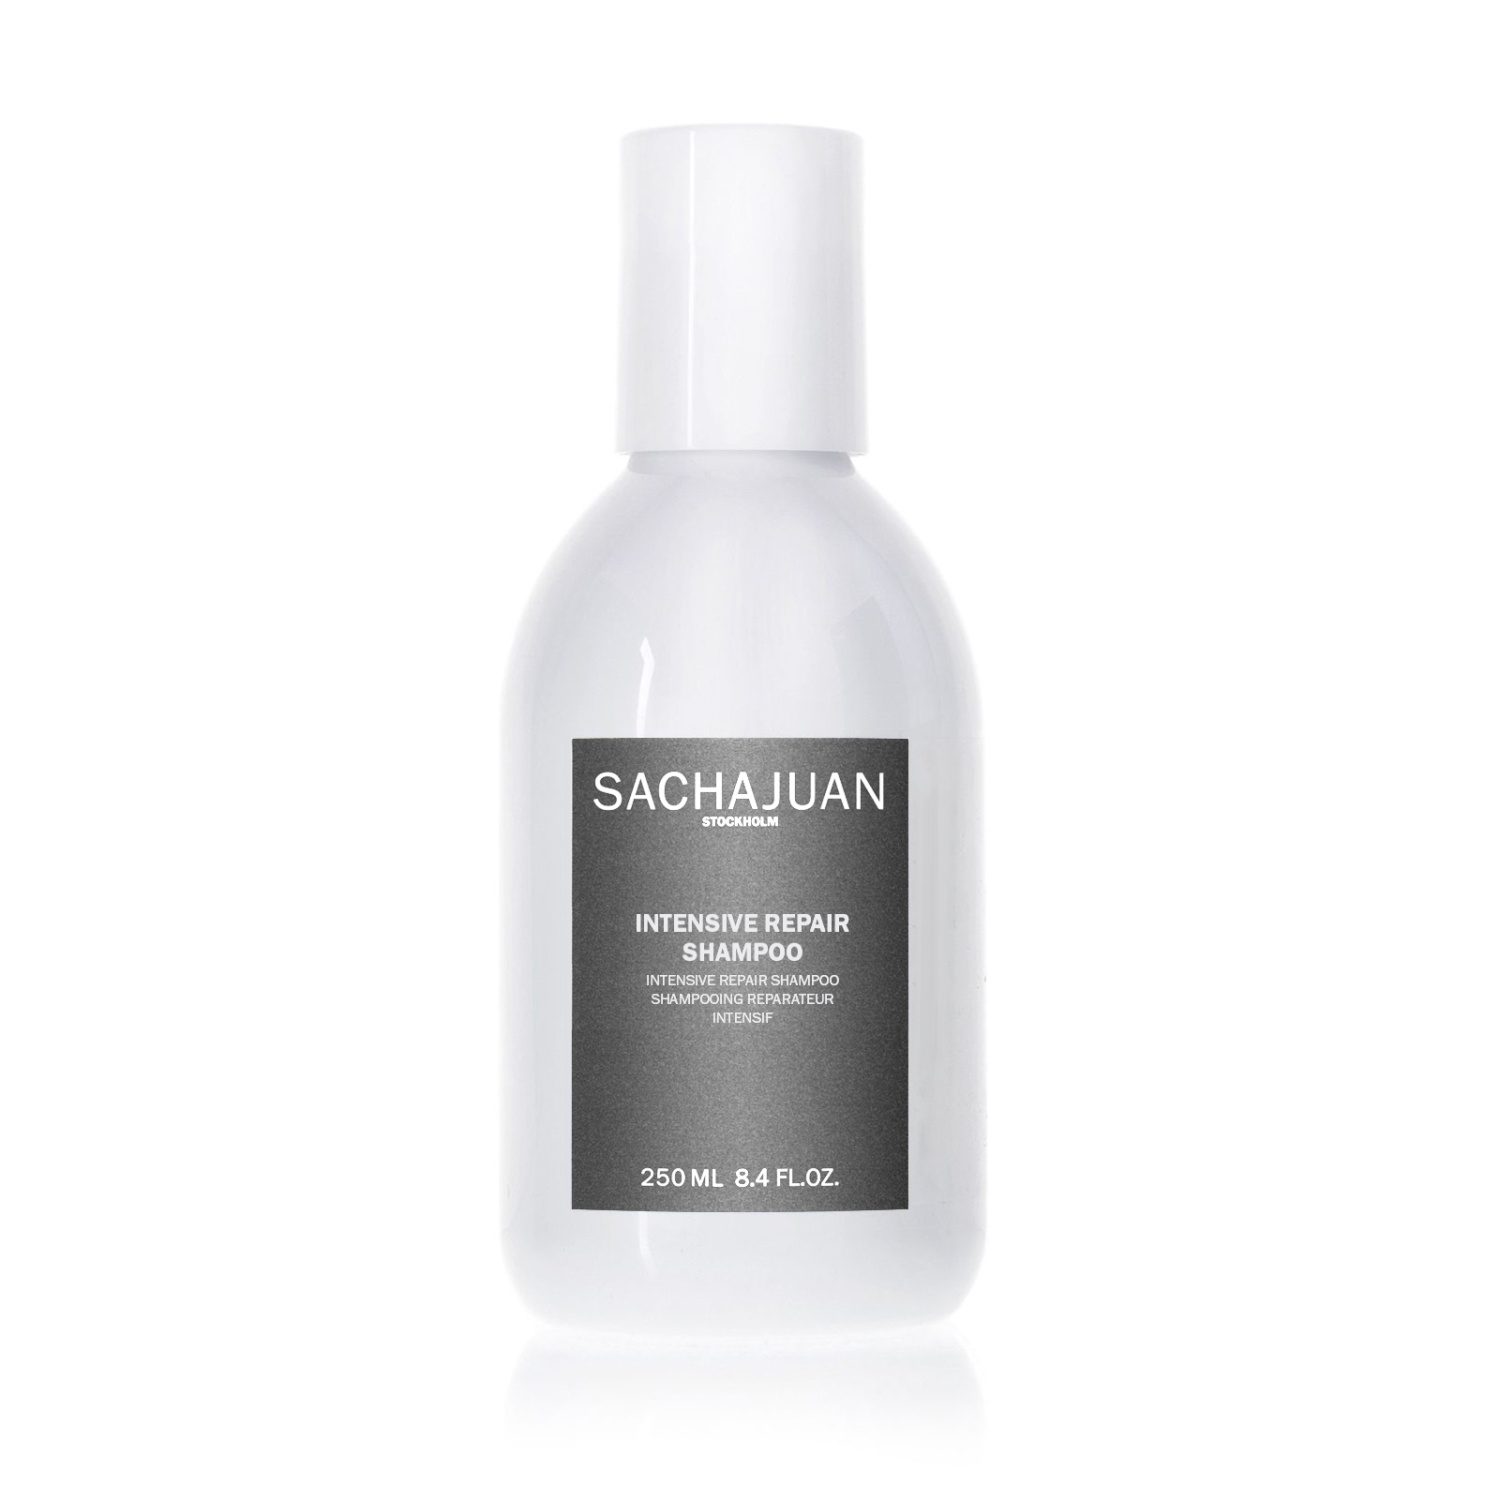 Sachajuan Intensive Repair Shampoo 250ml - интернет-магазин профессиональной косметики Spadream, изображение 48254